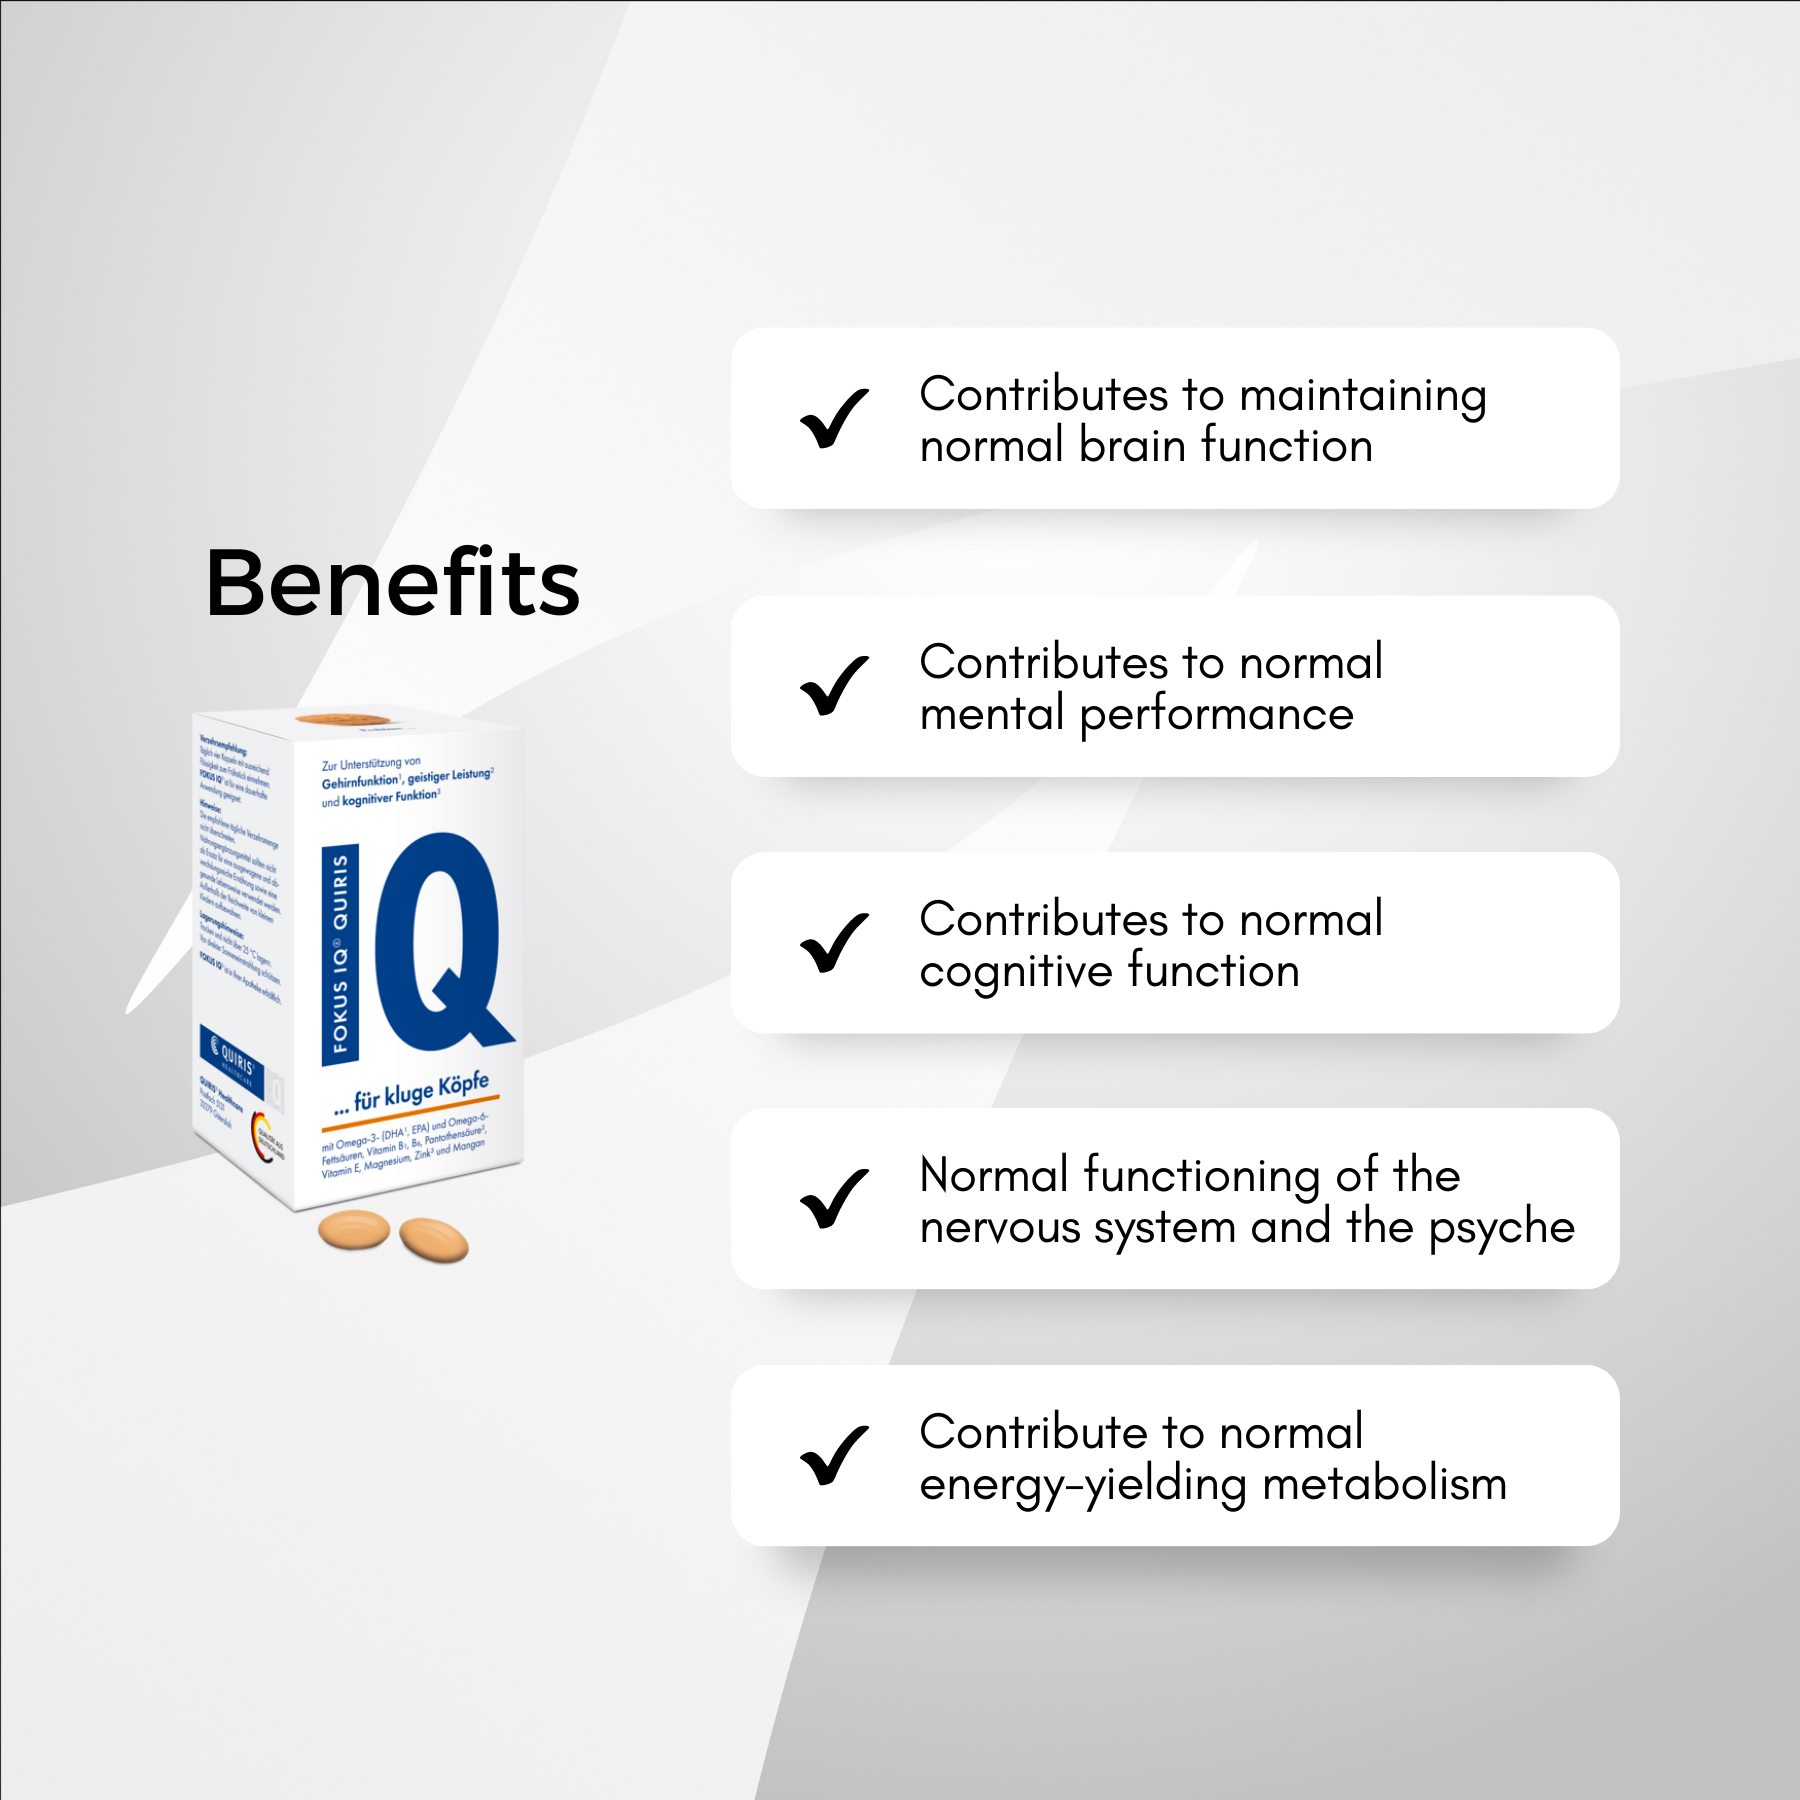 Fokus IQ® (120 capsules/ box)